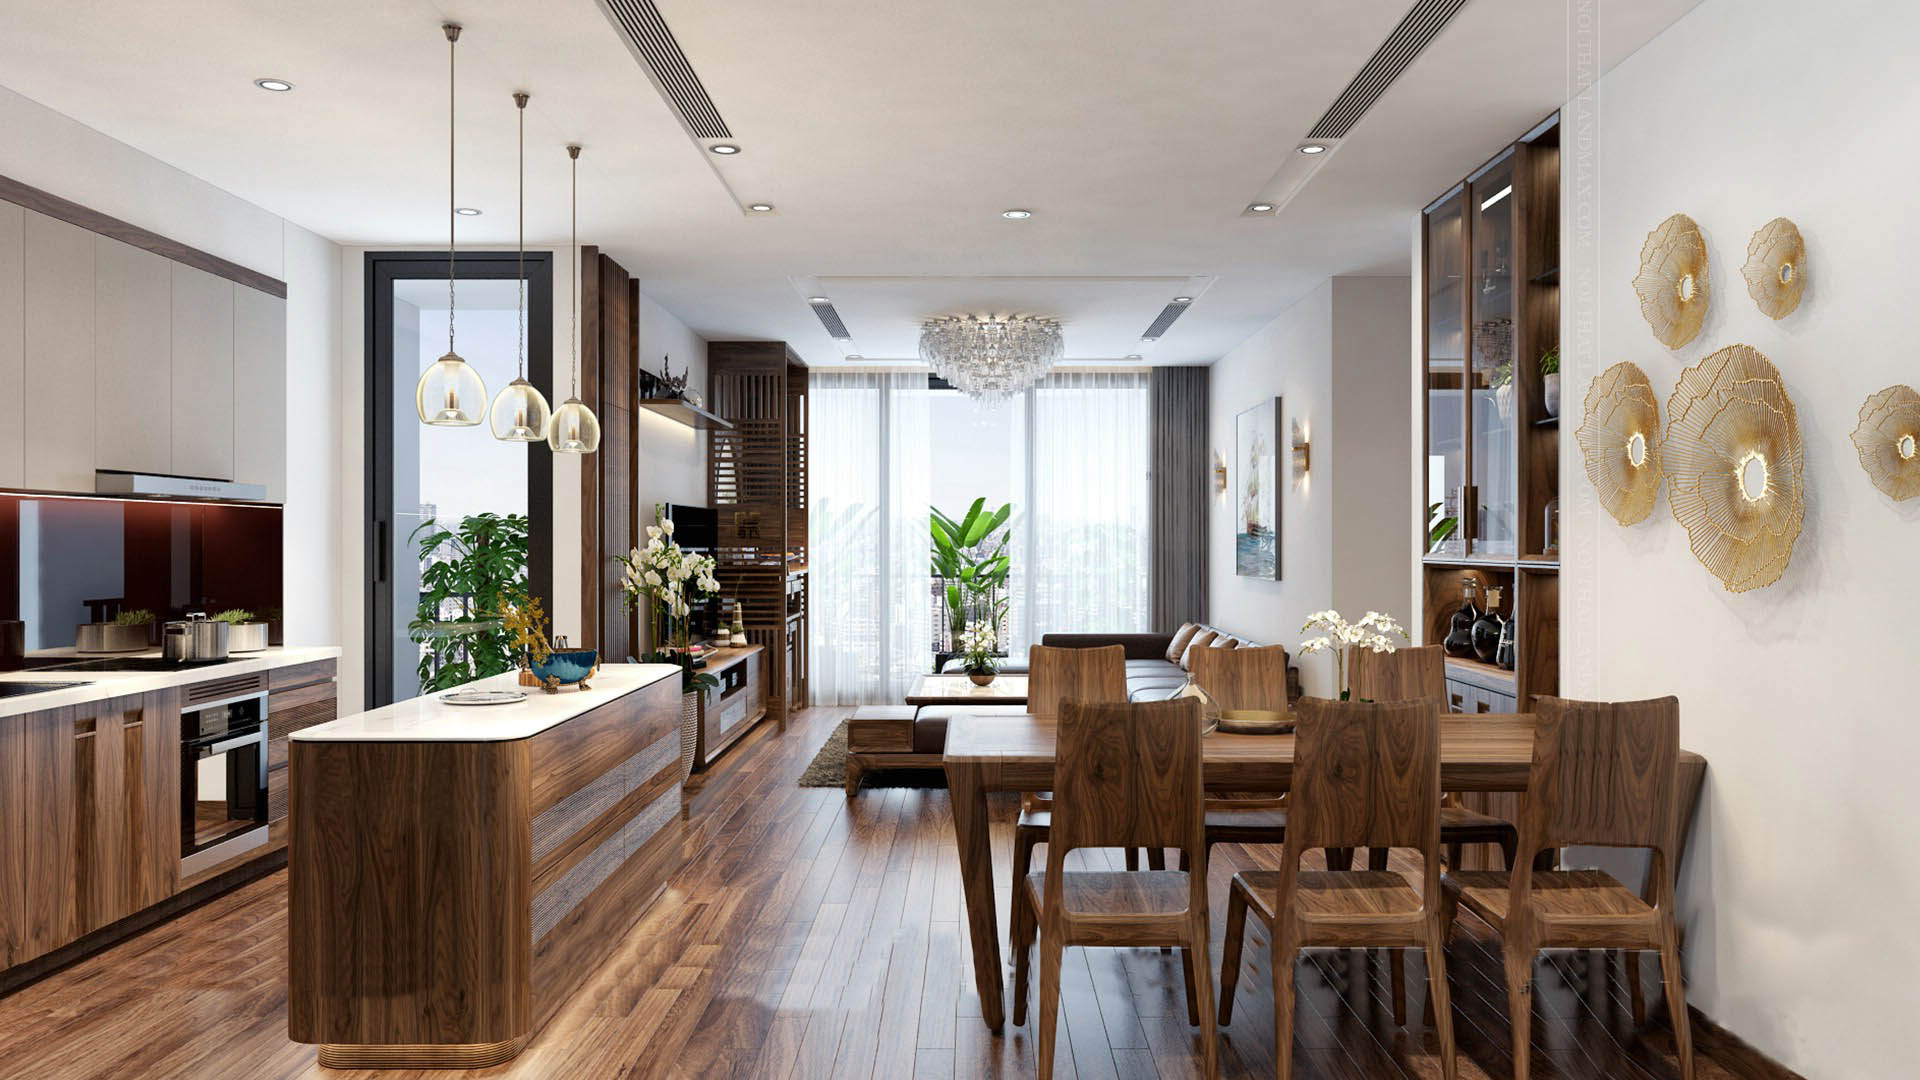 Thiết kế nội thất phòng ăn đẹp sang trọng với đèn chùm  Xây dựng Tây Hồ  Công ty Xây dựng chuyên thi công sửa chữa tại Hà Nội